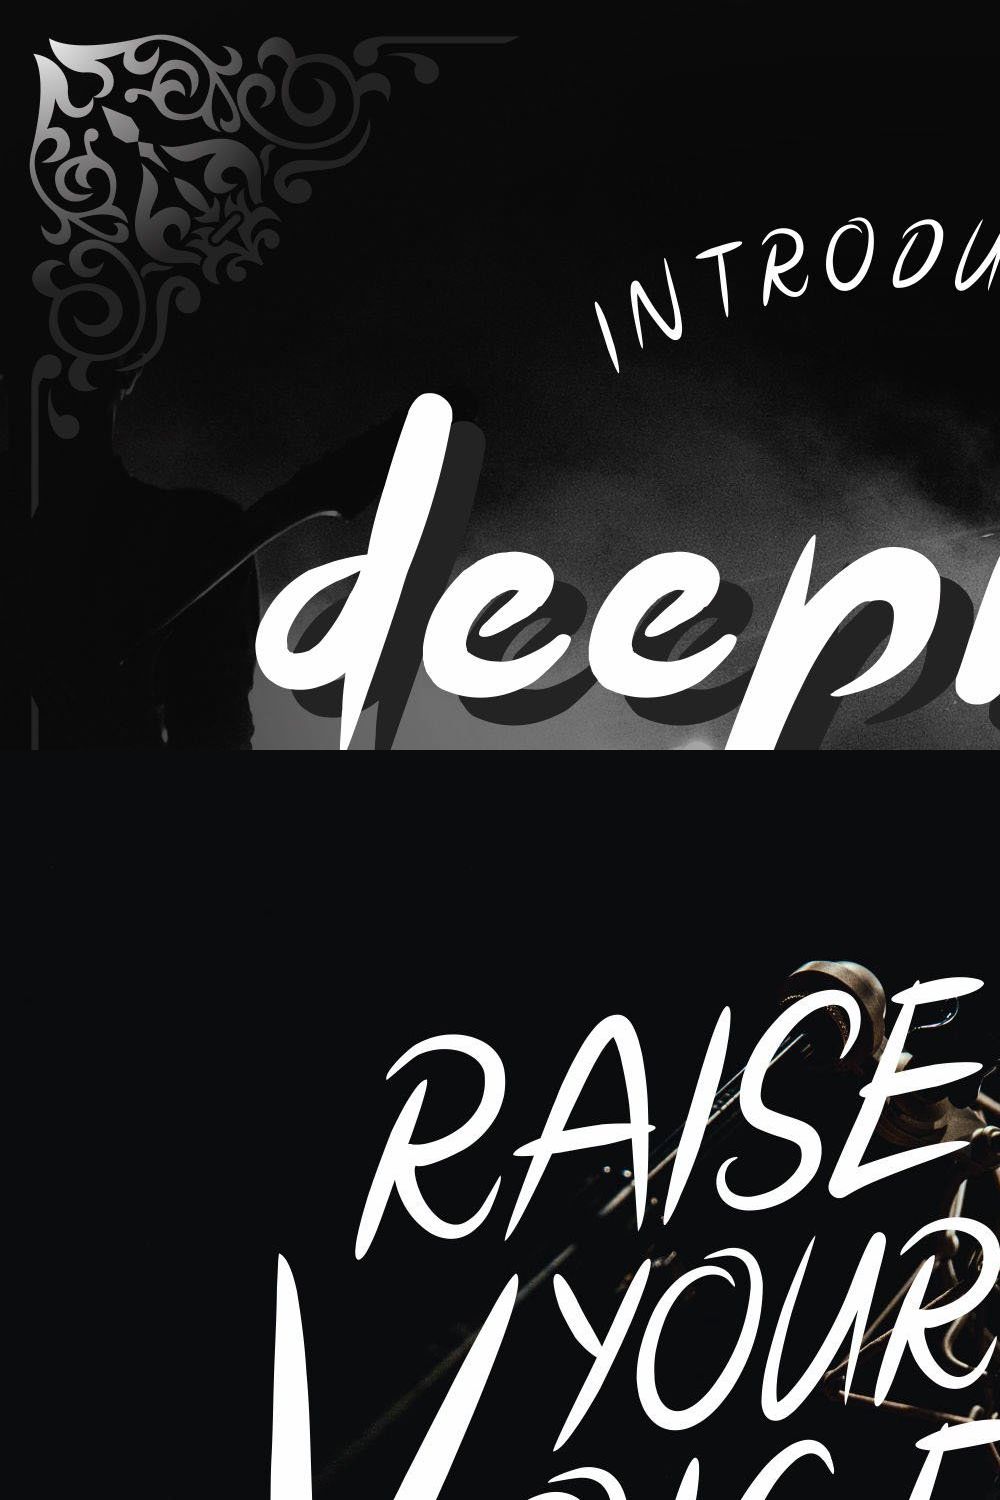 Deeproxx - A Handwritten Font pinterest preview image.